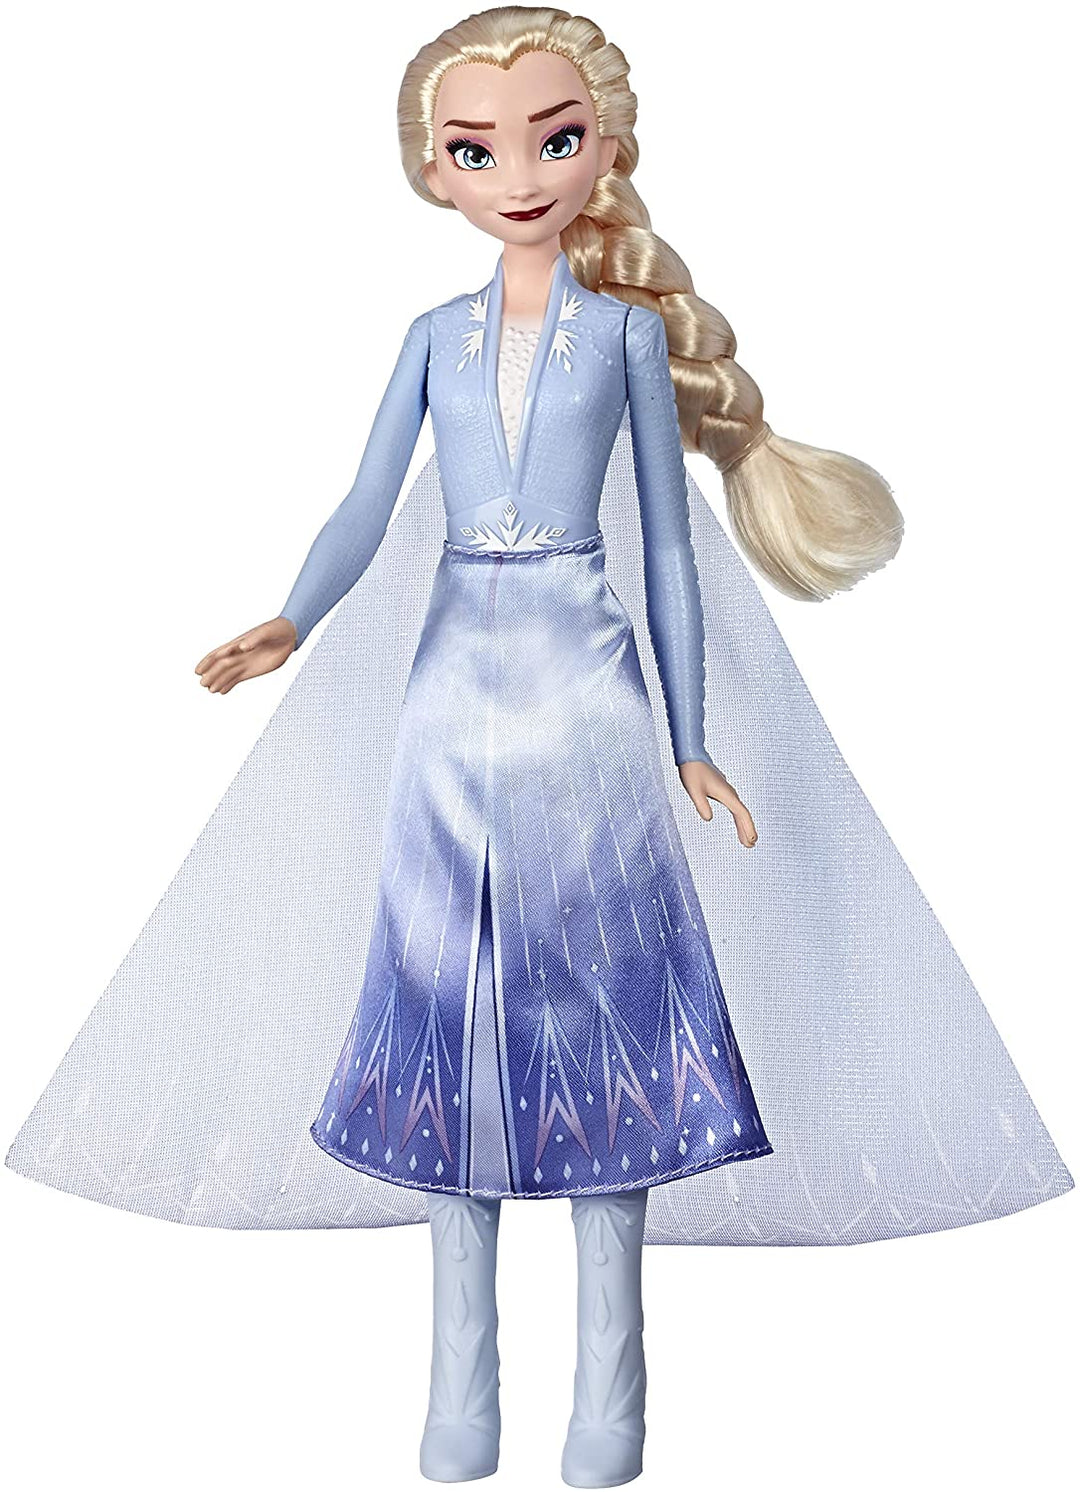 Poupée de mode Disney La Reine des Neiges Elsa Magical Swirling Adventure qui s&#39;illumine, inspirée du film La Reine des Neiges 2 de Disney